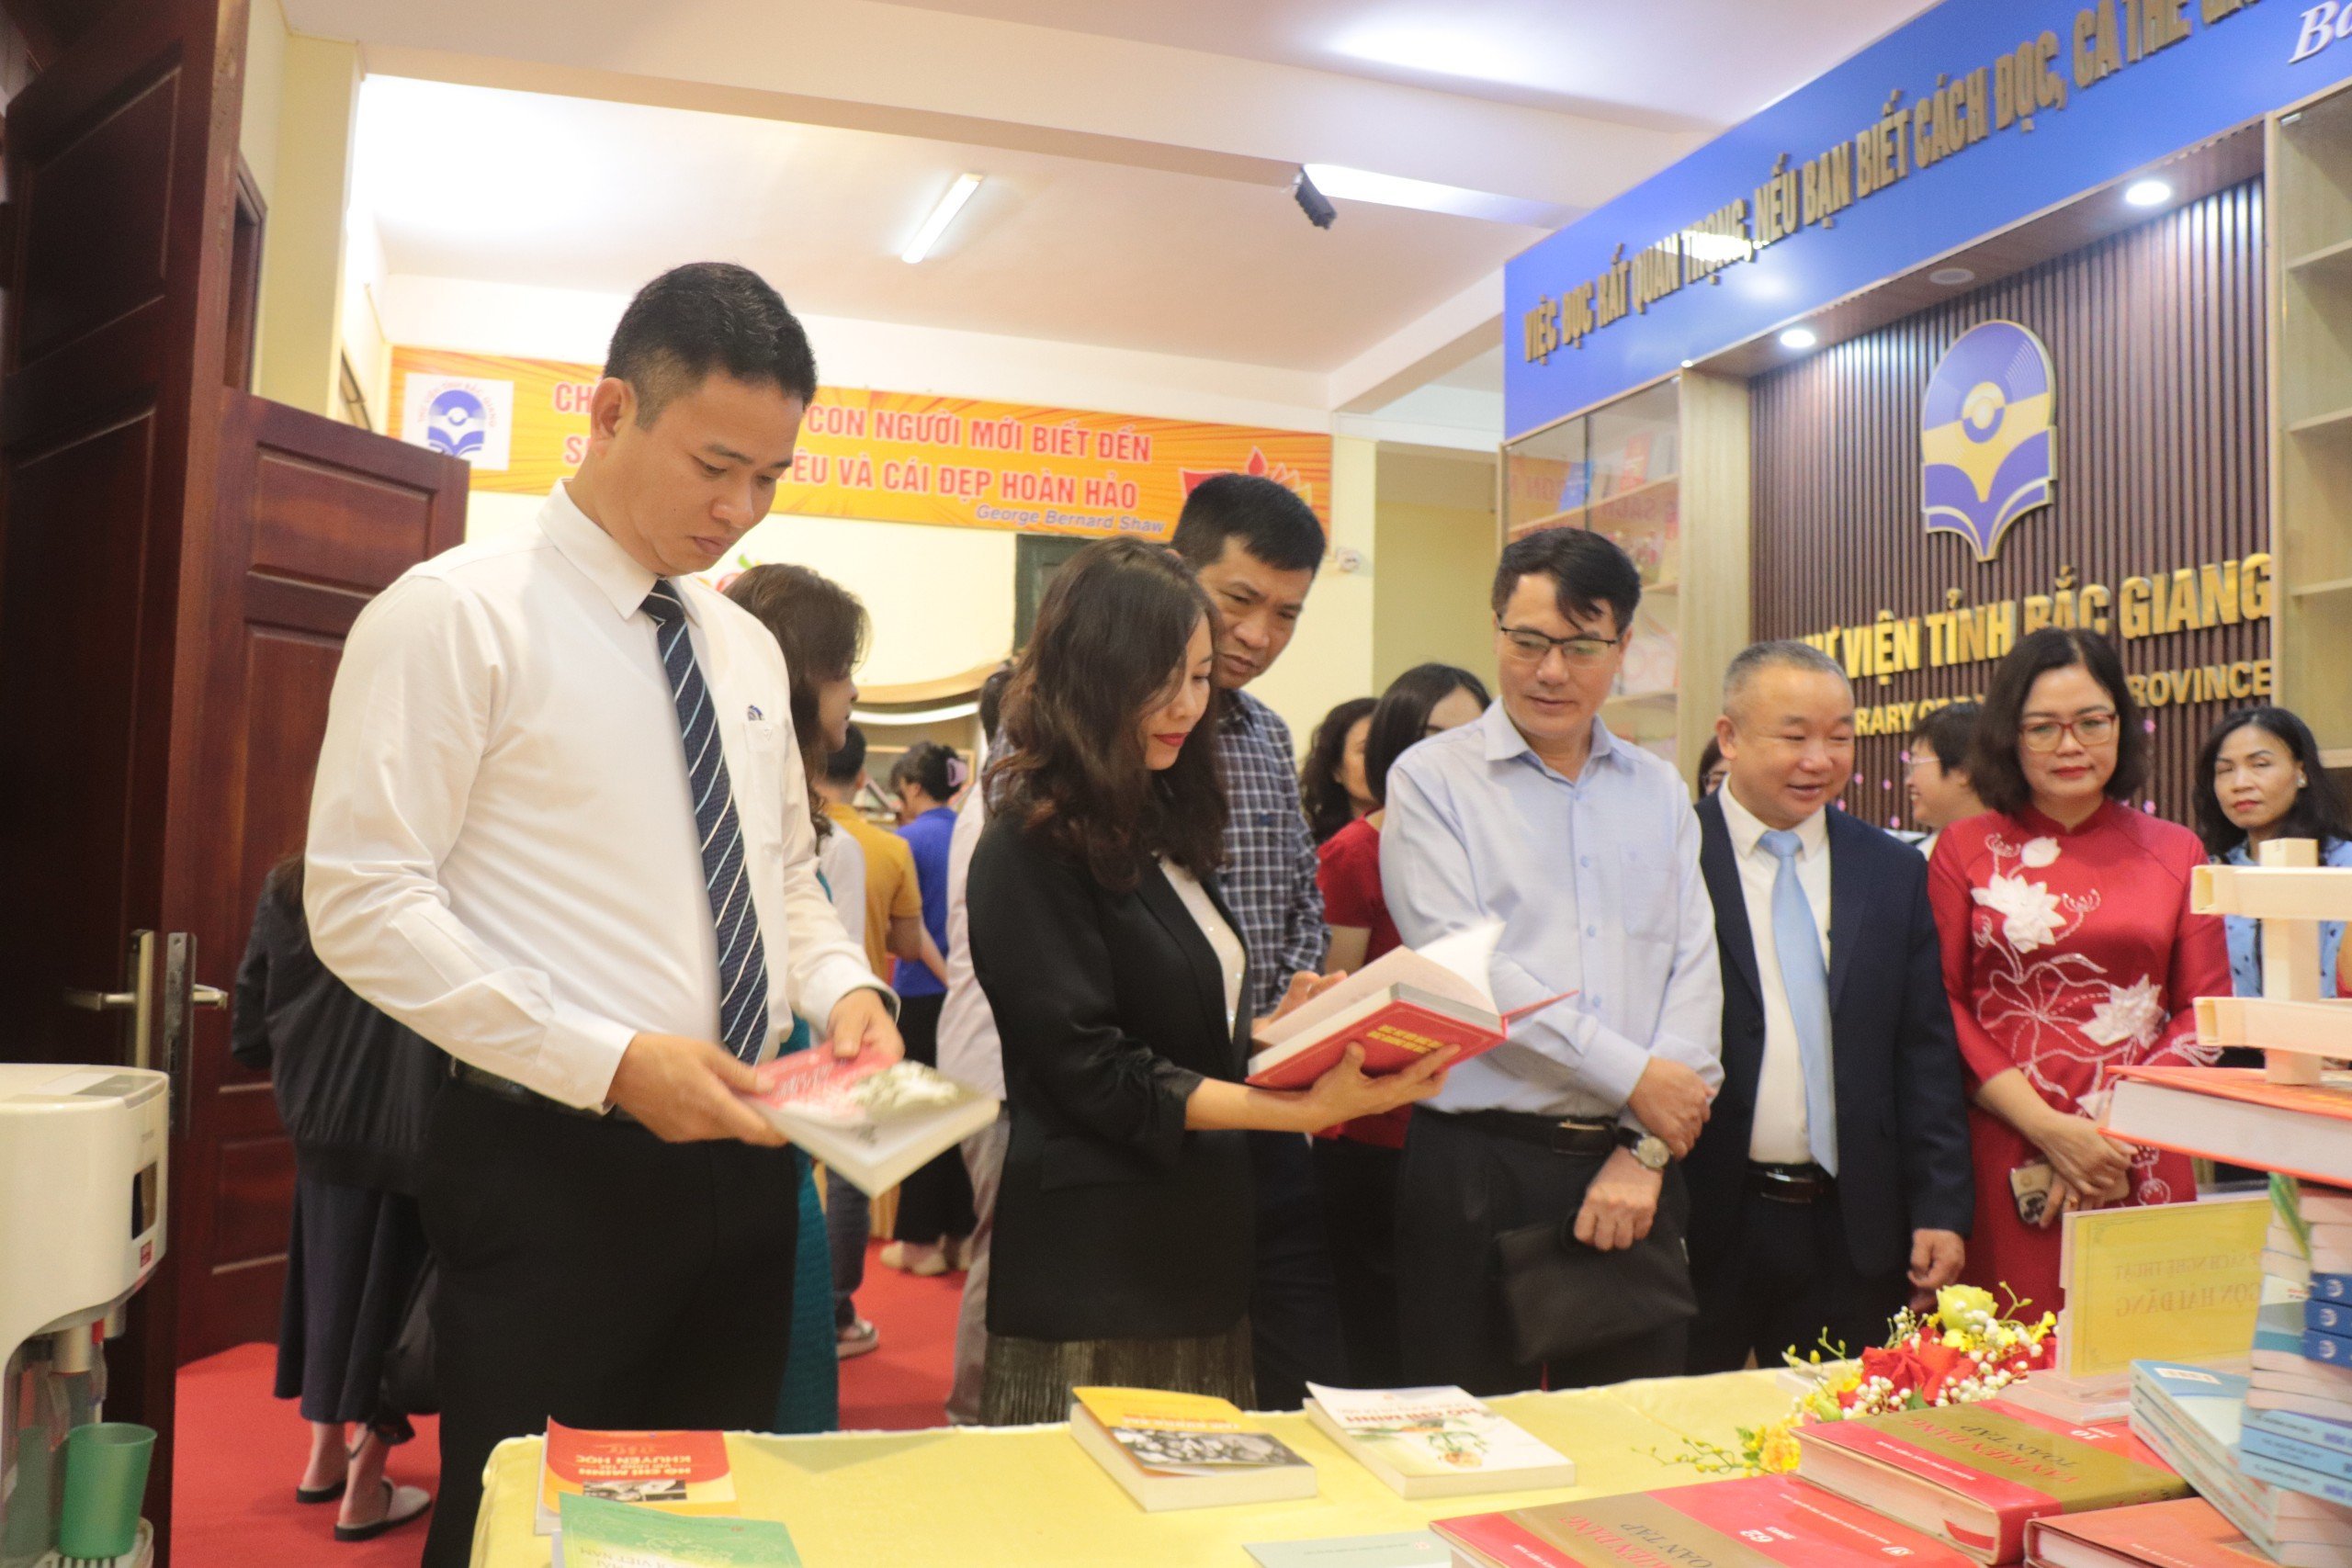 Thư viện tỉnh Bắc Giang trưng bày sách báo và tư liệu chào mừng Kỷ niệm 60 năm ngày thành lập Thư viện tỉnh (10/4/1964 – 10/4/2024).